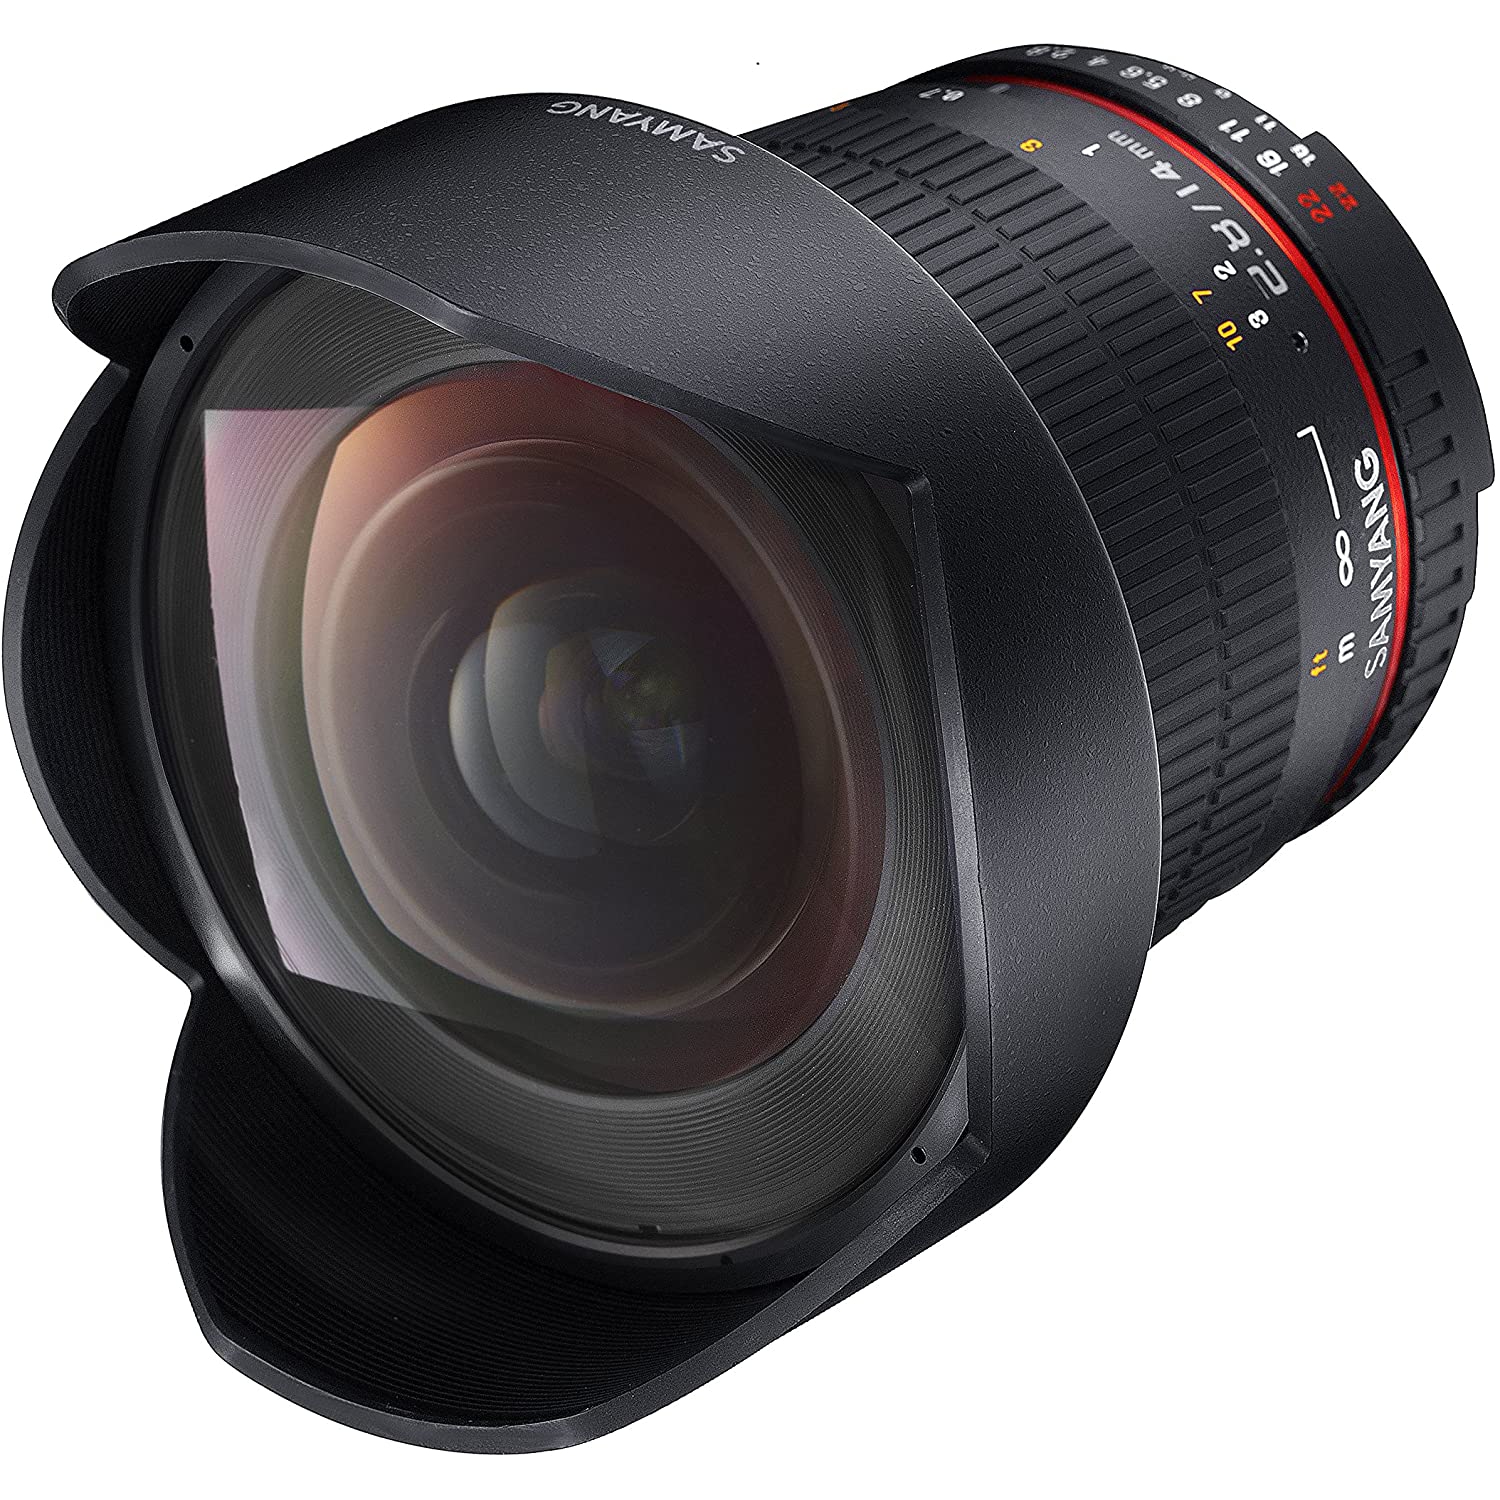 Samyang SY14M-E 14mm F2.8 Ultra Wide Lens for Sony E-Mount